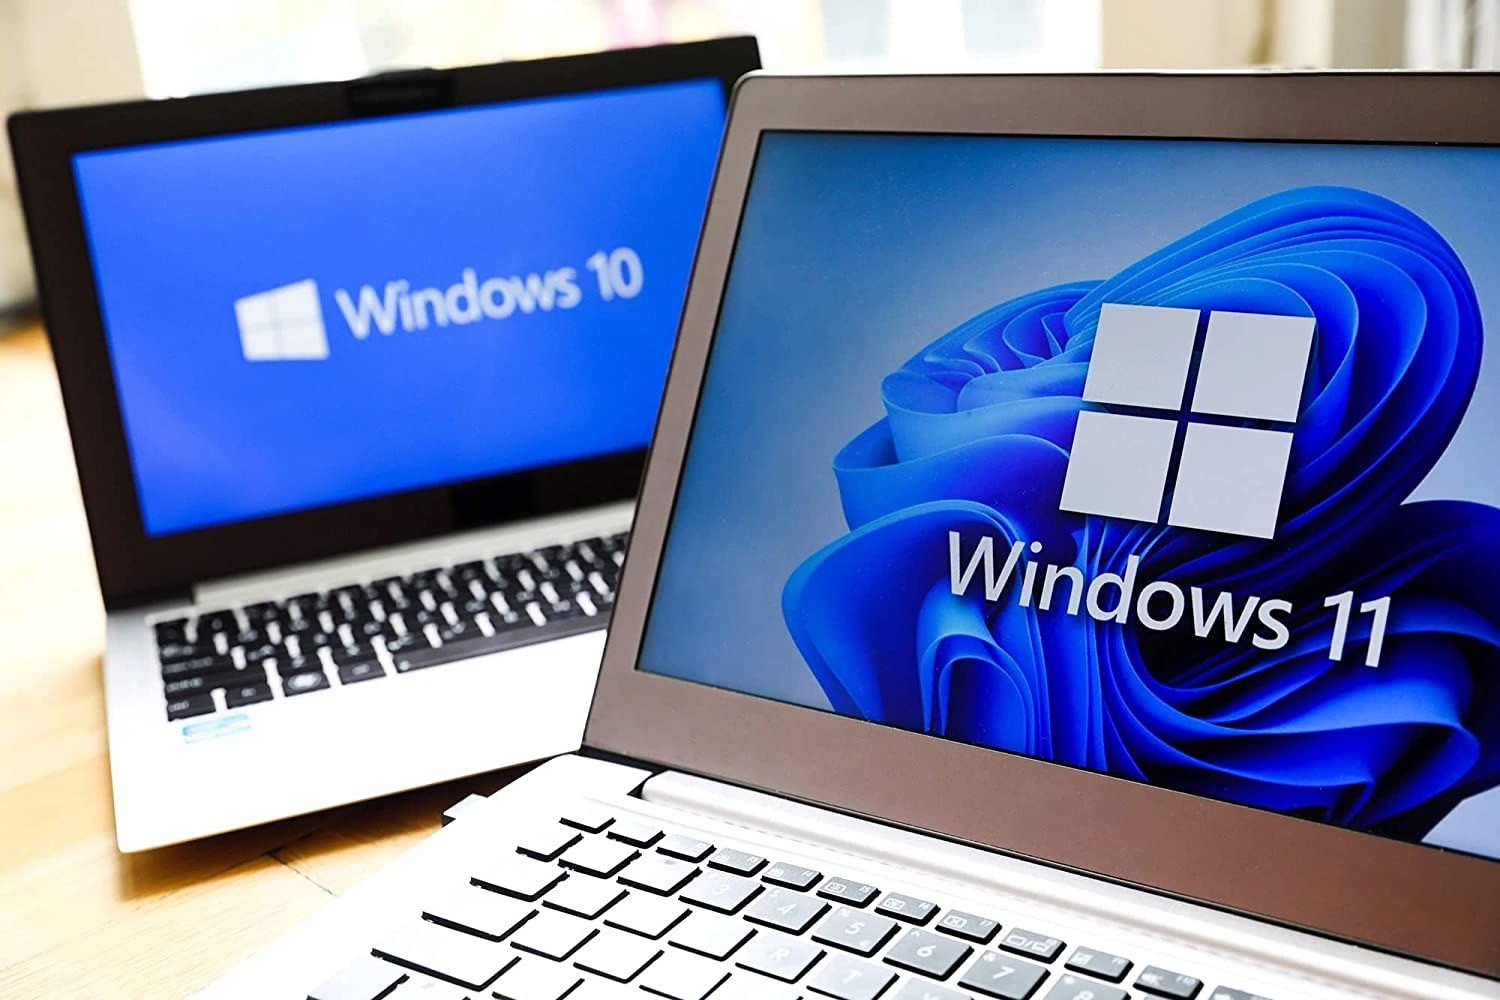 Windows 10 / 11 Pro DSP 日本語 新品未開封品 (M1/2 Mac parallels 可